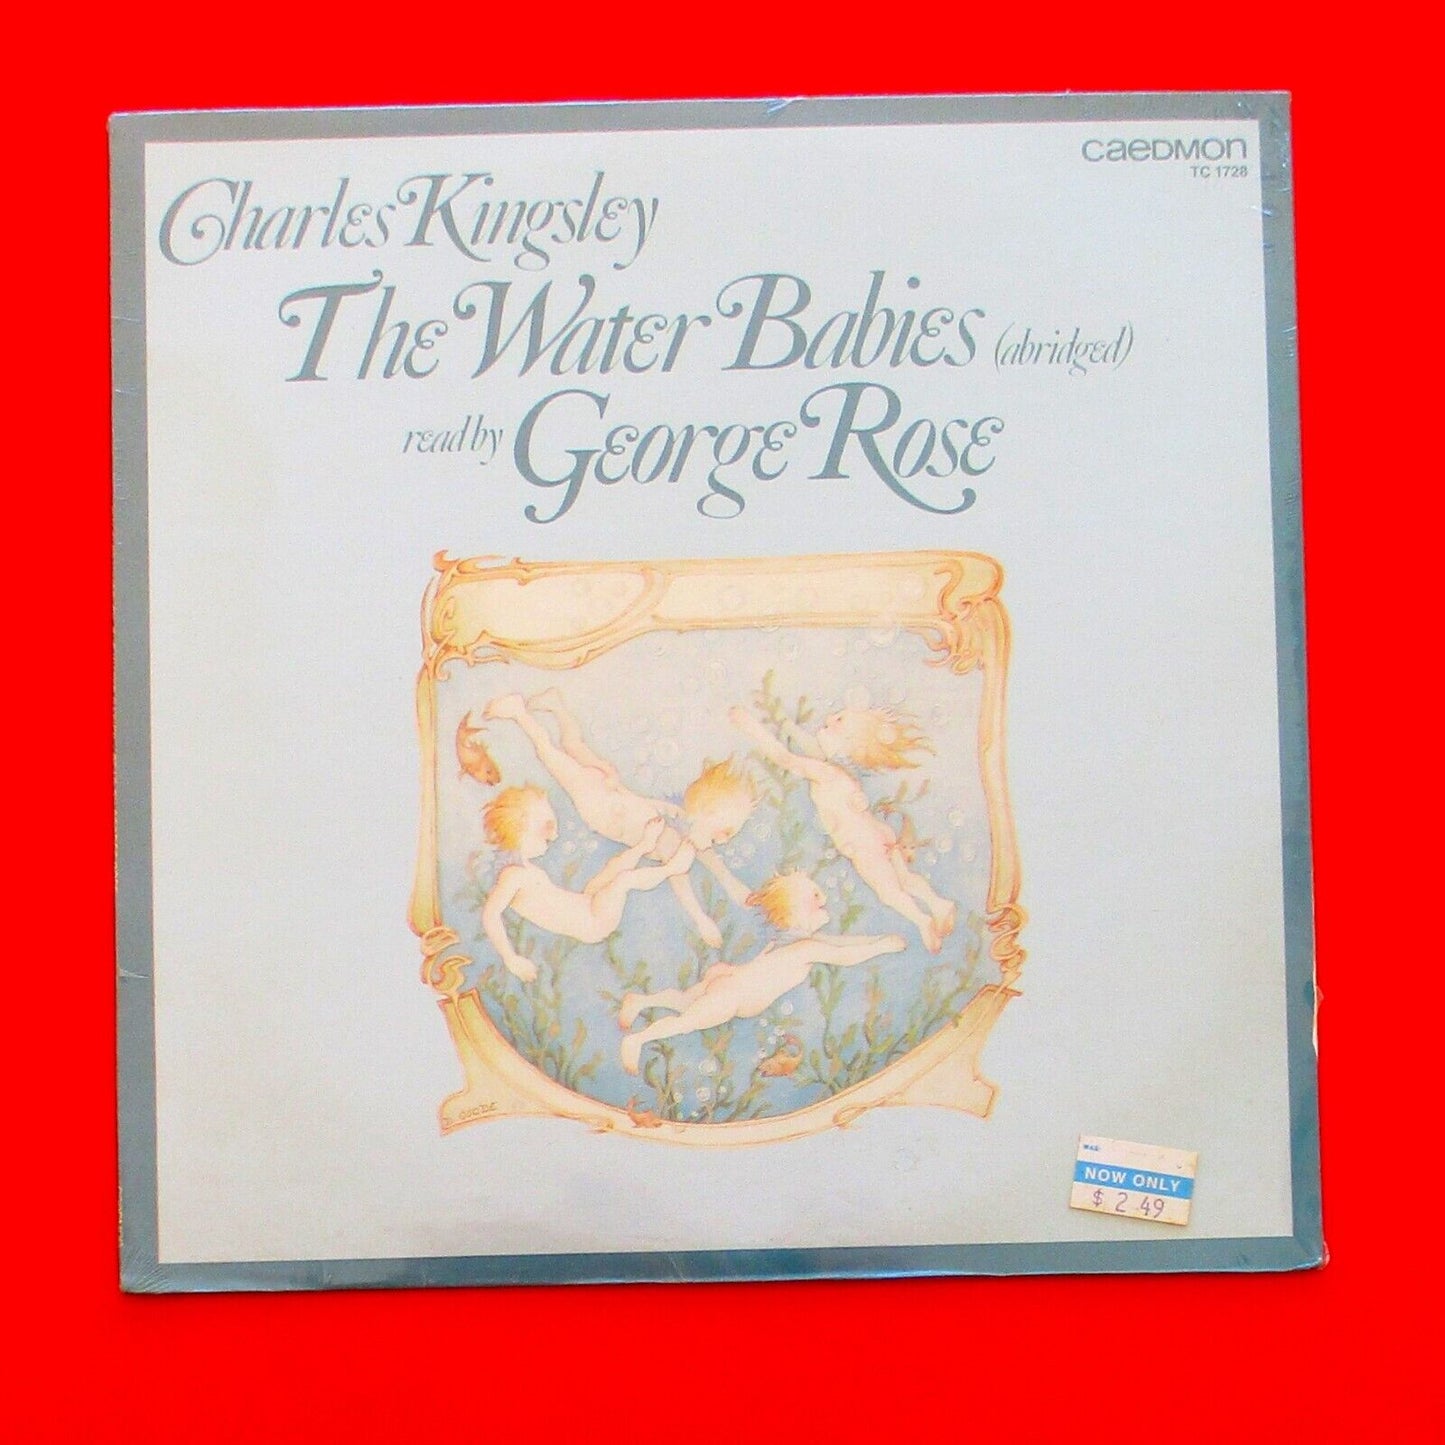 Charles Kingsley The Water Babies (Abridged) Read by George Rose Vinyl LP Sealed